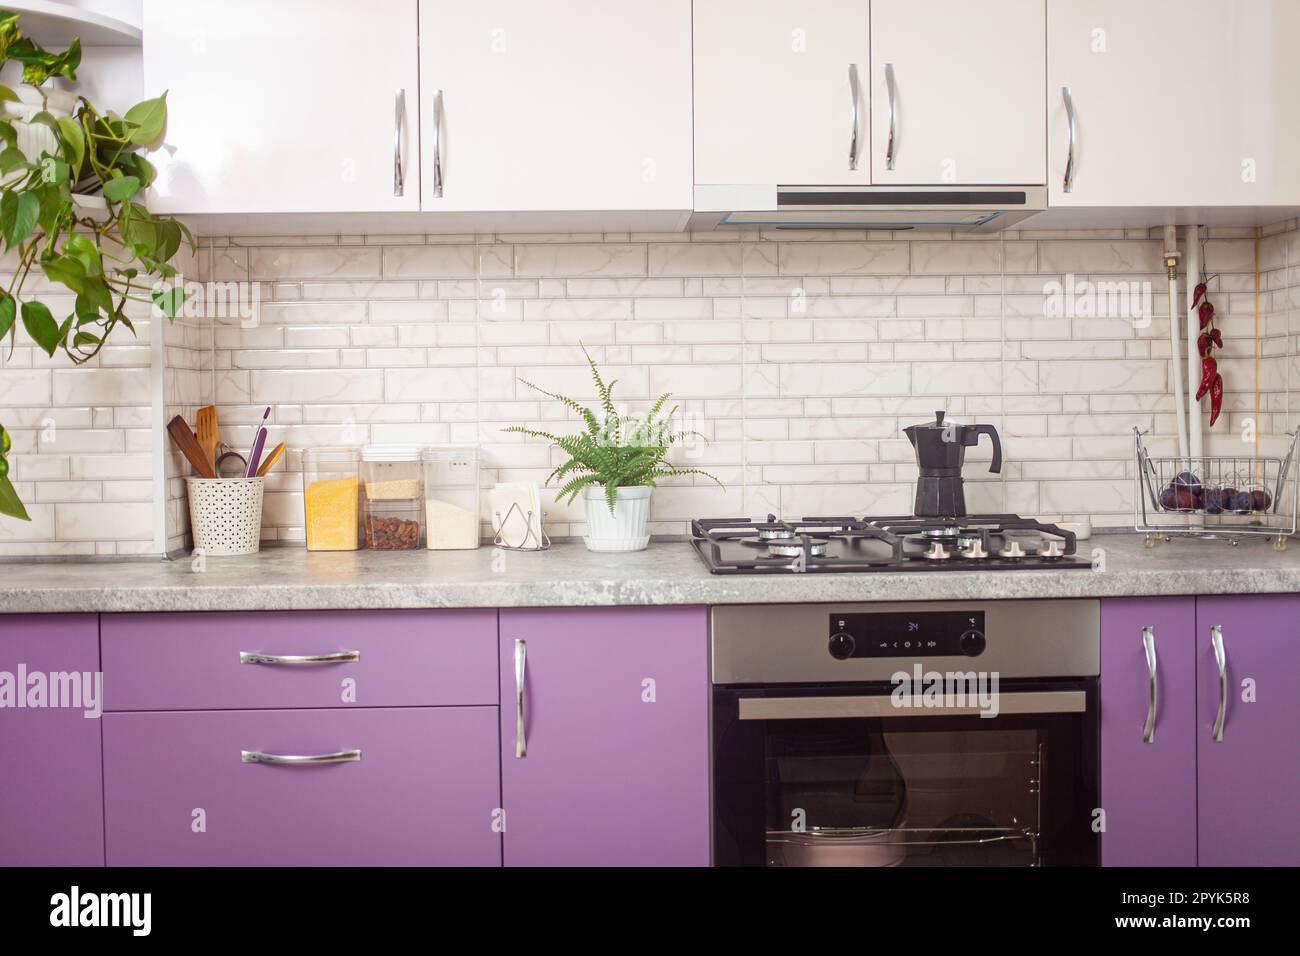 Küche lila, lavendelfarben, weiße Schränke, grüne Blumen, schwarzer Ofen. Hintergrund. Stockfoto